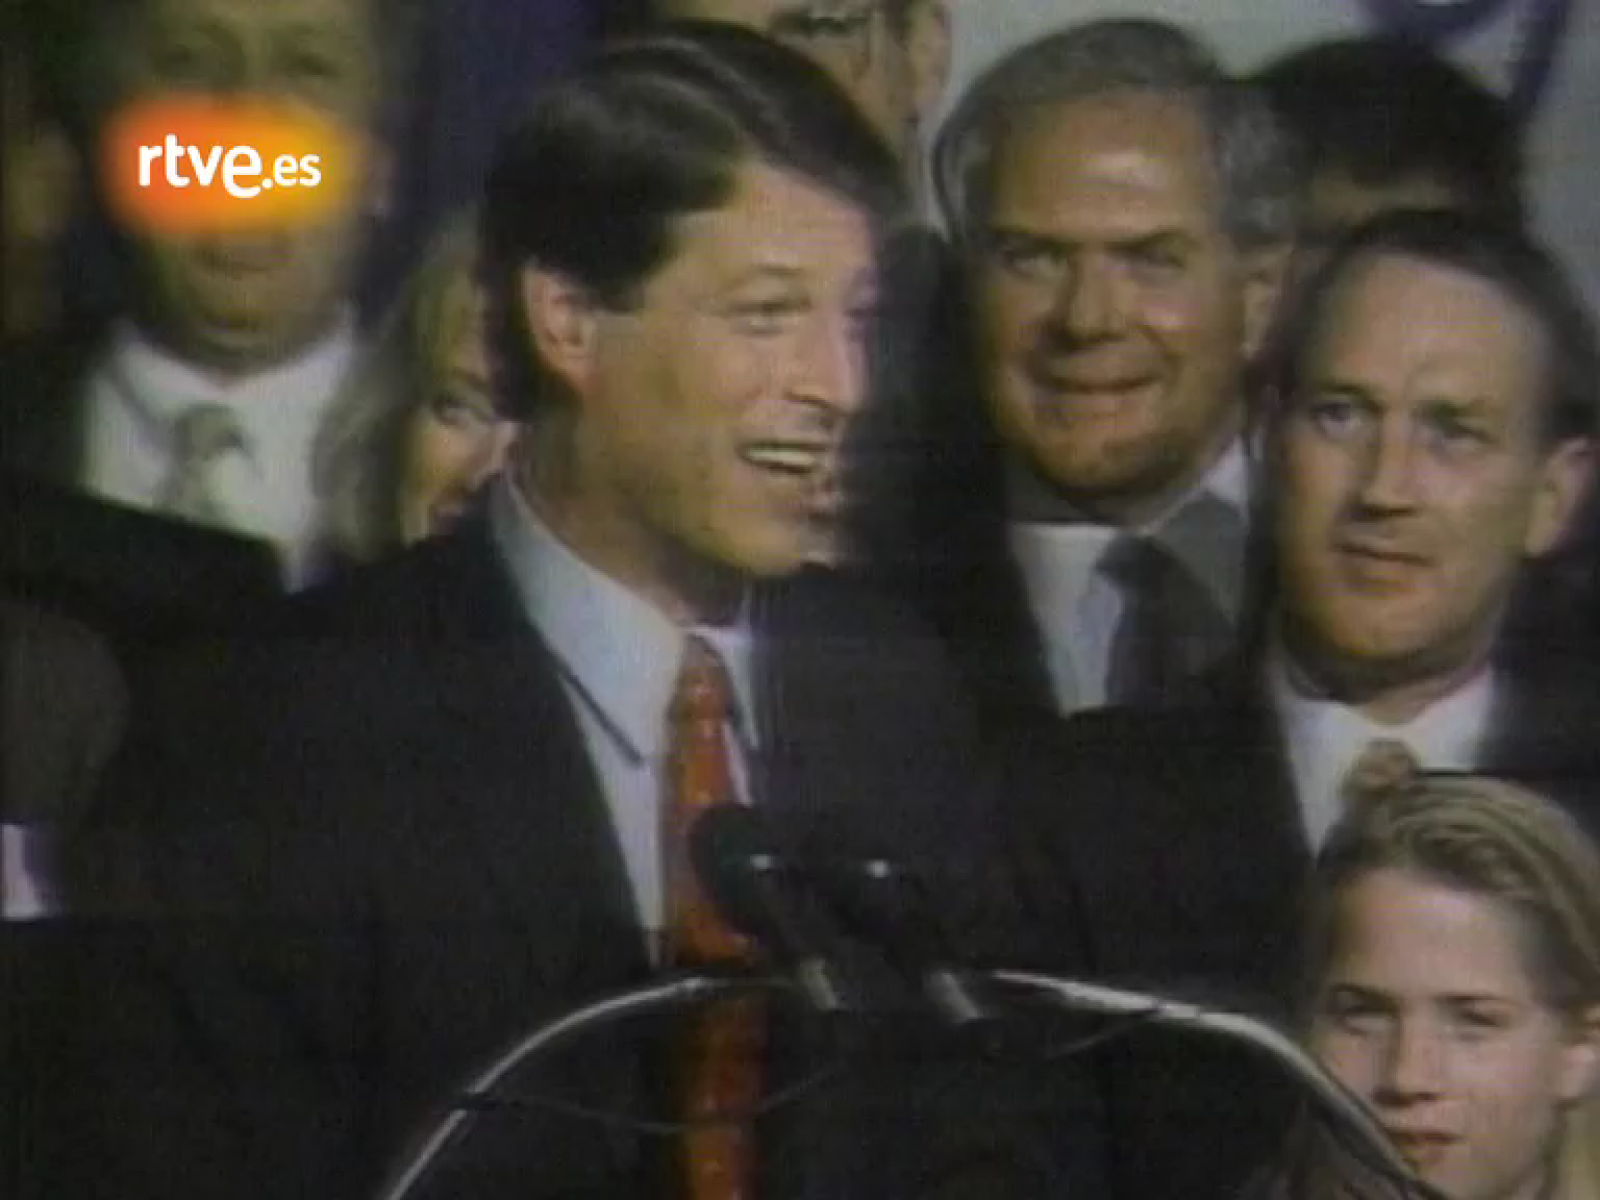 El primer Supermartes, celebrado en 1988 arrojó una victoria arrolladora del vicepresidente, George H. Bush, mientras que los demócratas aparecieron divididos entre Al Gore, Jesse Jackson y Michael Dukakis.